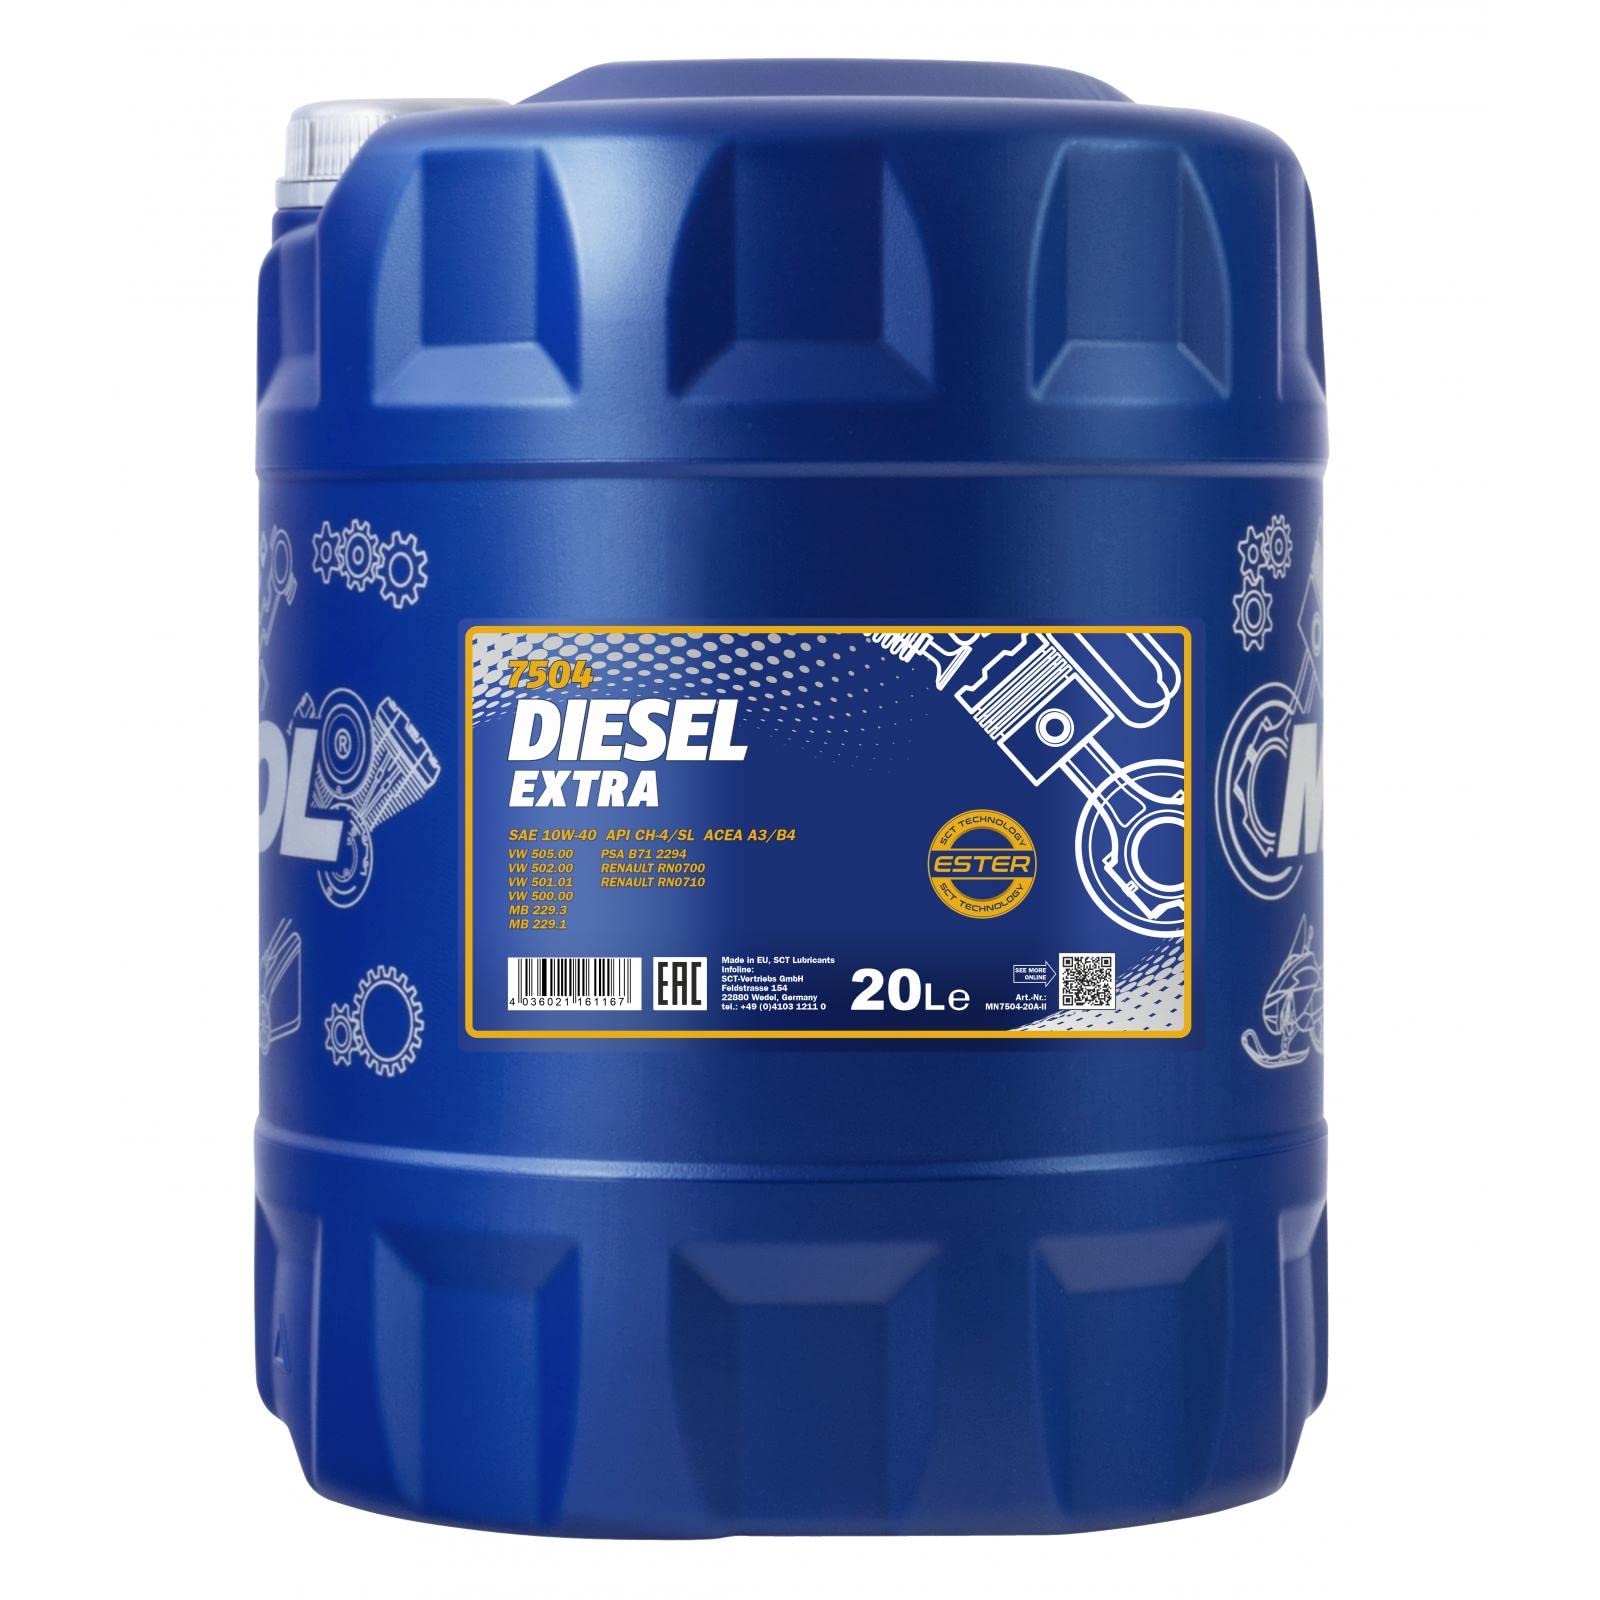 MANNOL Diesel Extra 10W-40 API CH-4/SL Motorenöl, 20 Liter von MANNOL